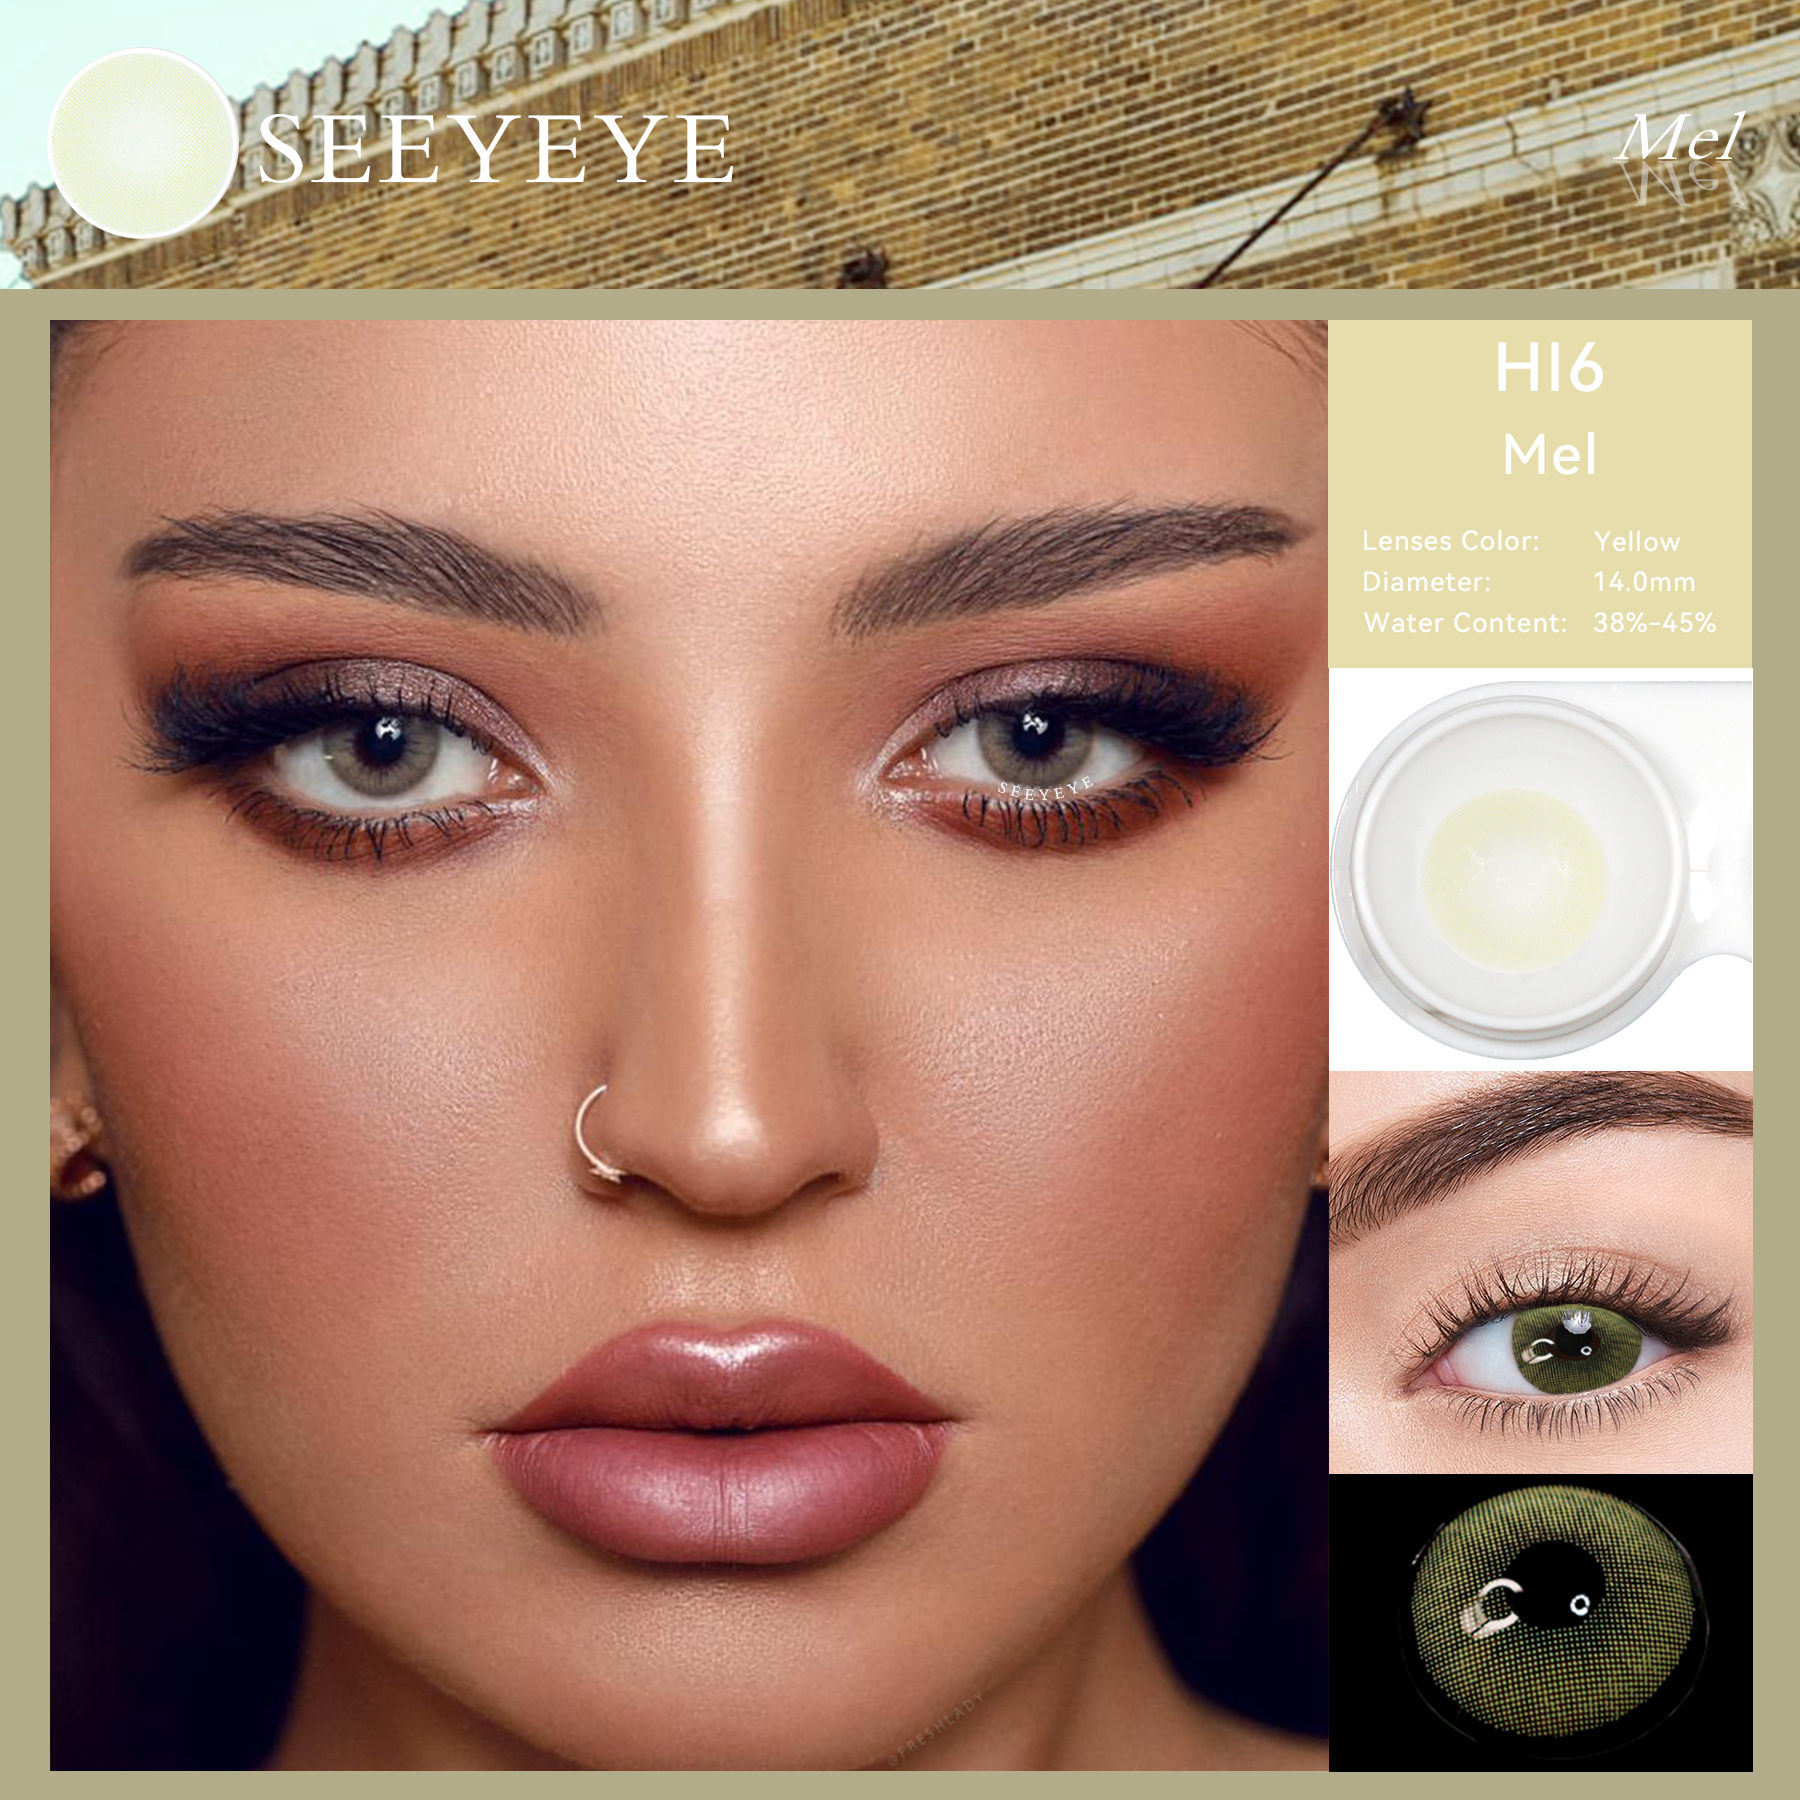 Seeyeye Hi Series Natural Looking Chinese Cosmetic Grosir Warna Lensa Kontak Lensa Kontak Warna Mata Lembut Tahunan Murah